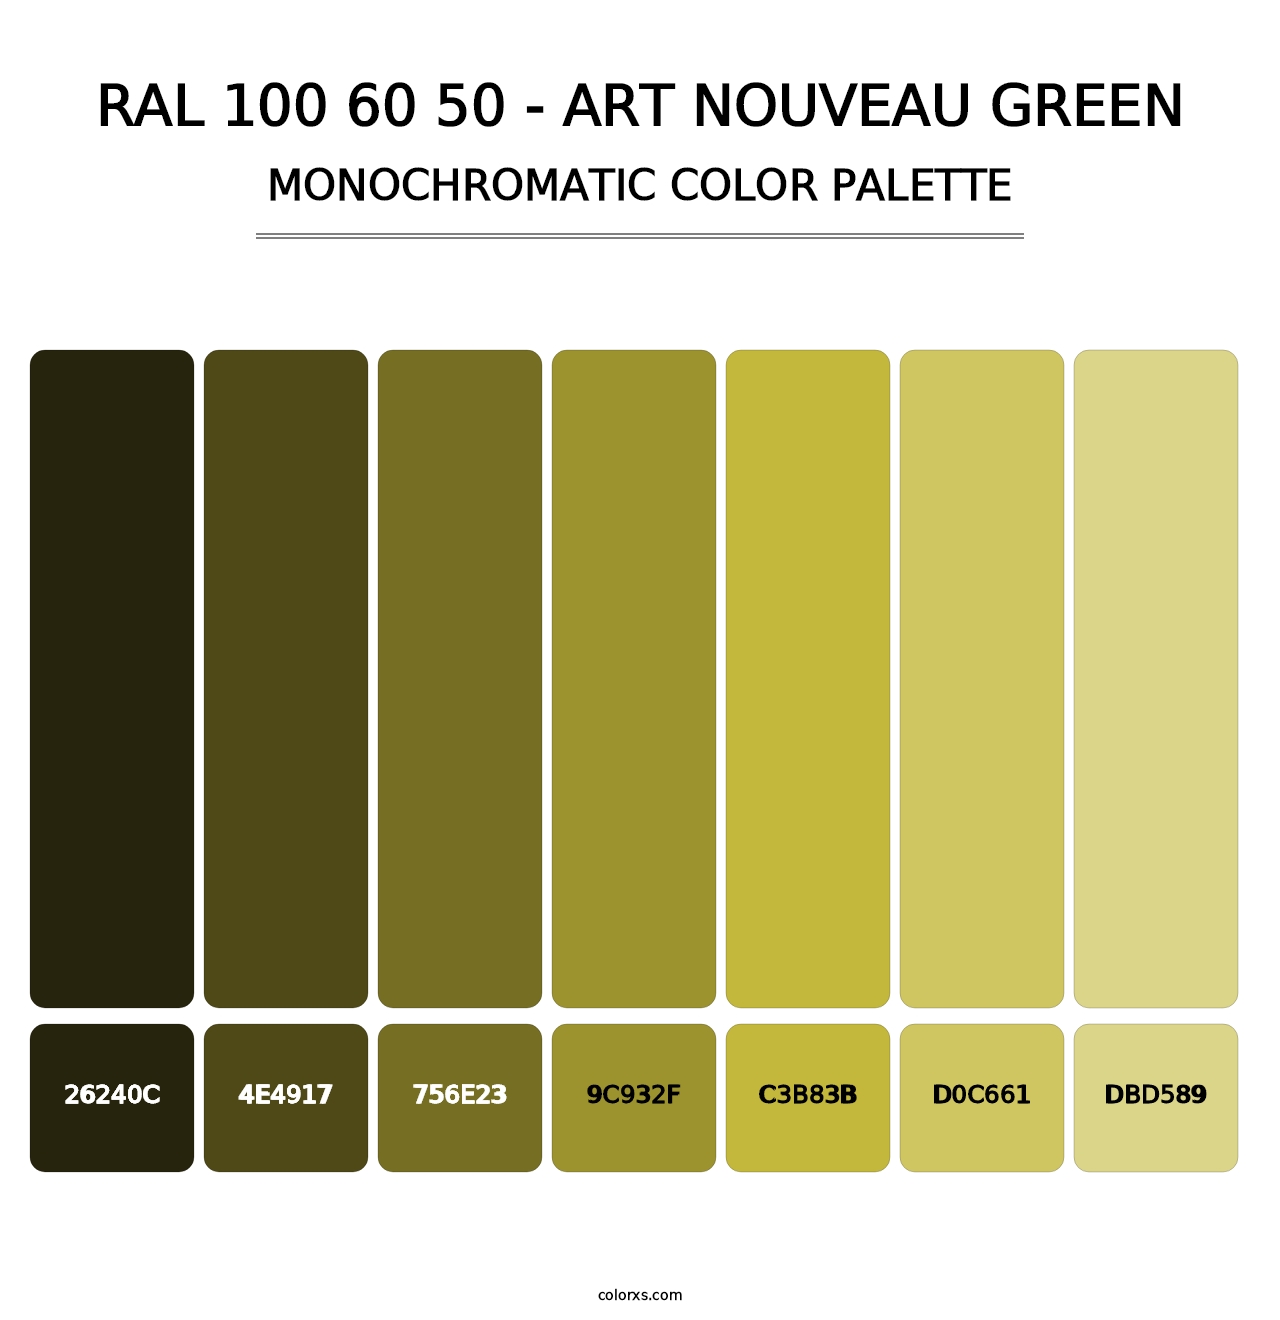 RAL 100 60 50 - Art Nouveau Green - Monochromatic Color Palette